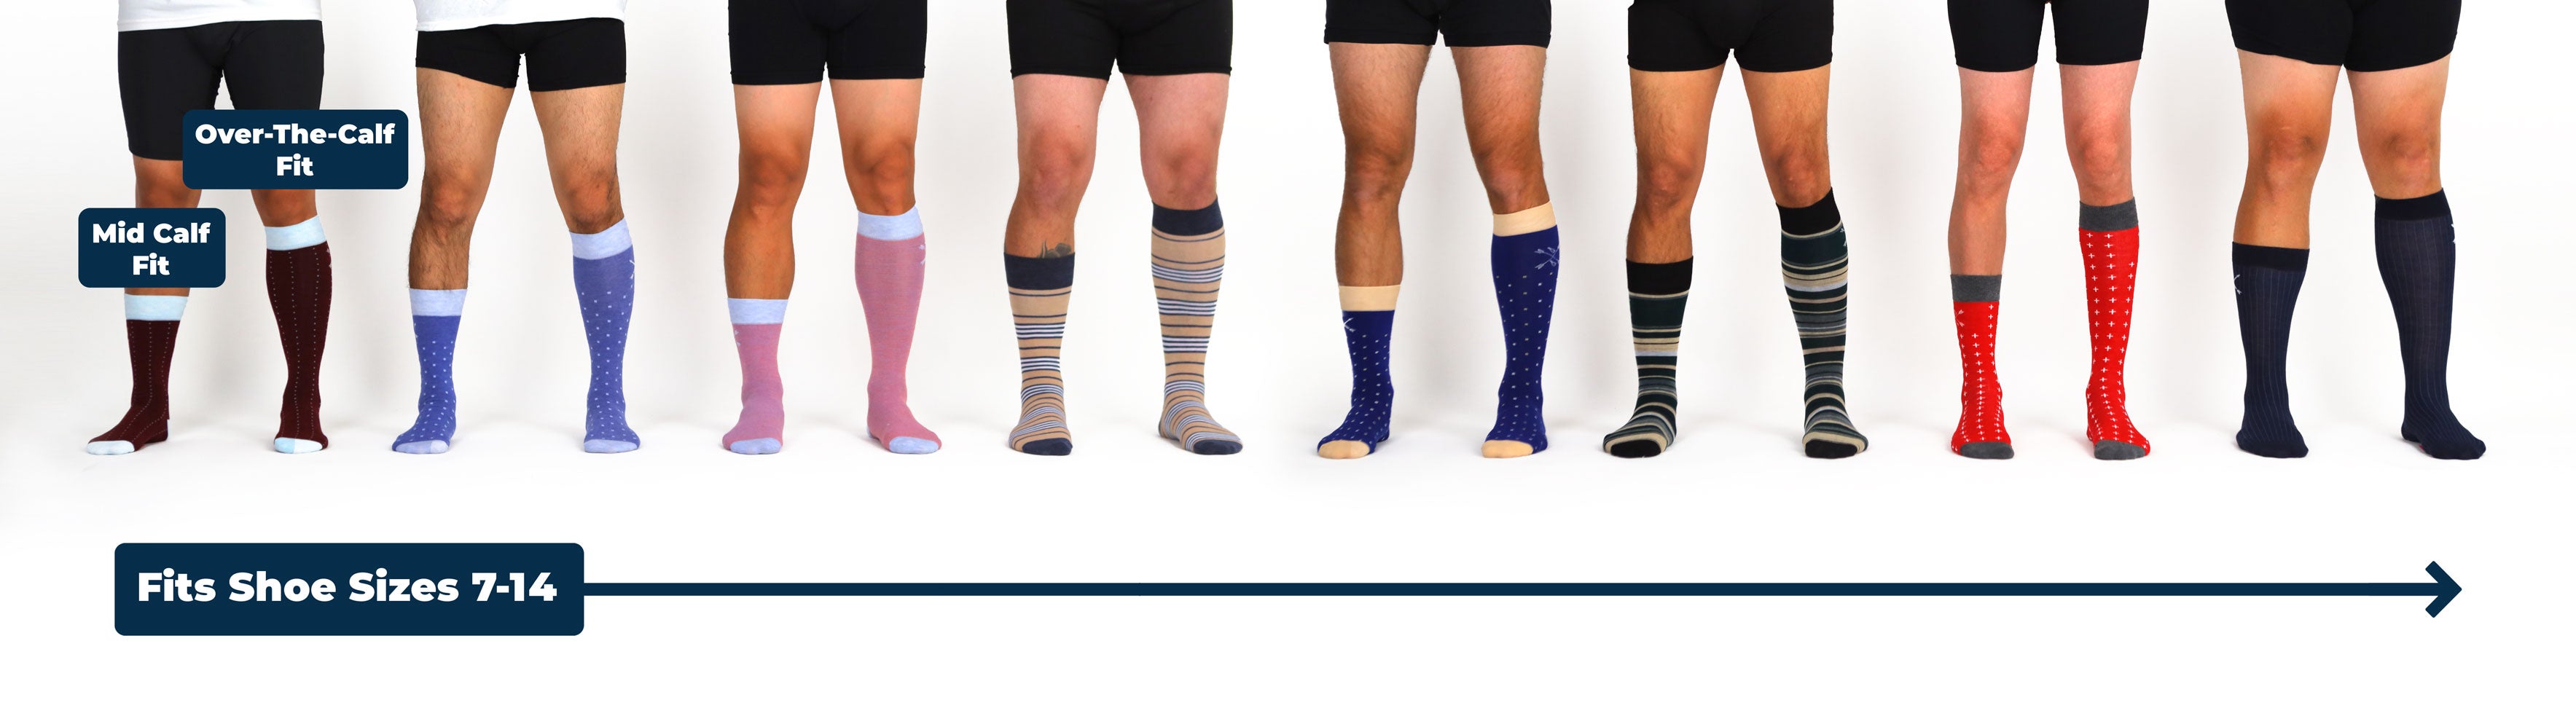 men sizes 7-14 wearing mens dress socks